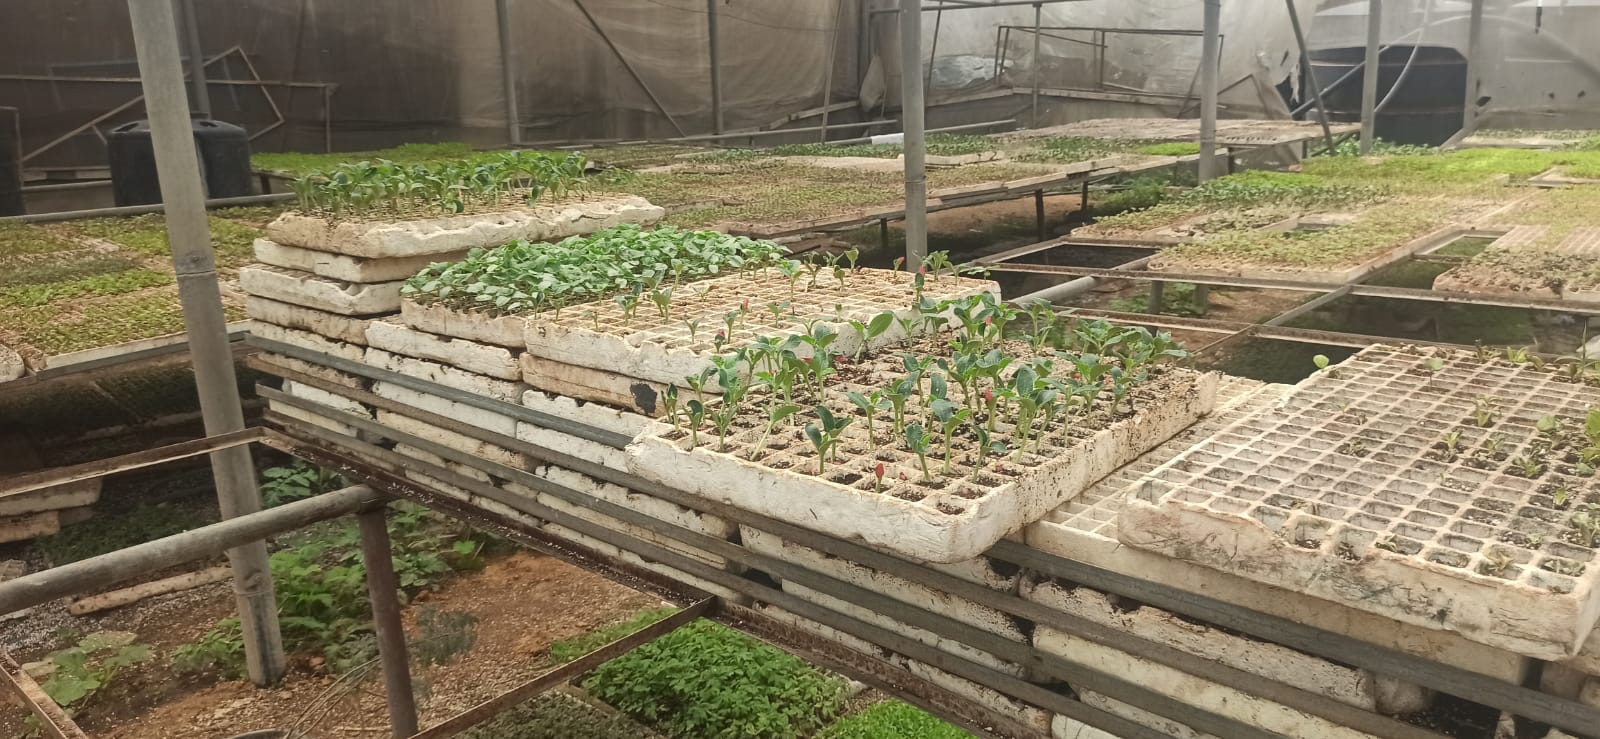 إحياء مزارع غزة.. مبادرة تنجز تأهيل وزراعة 400 دونم من المحاصيل في القطاع